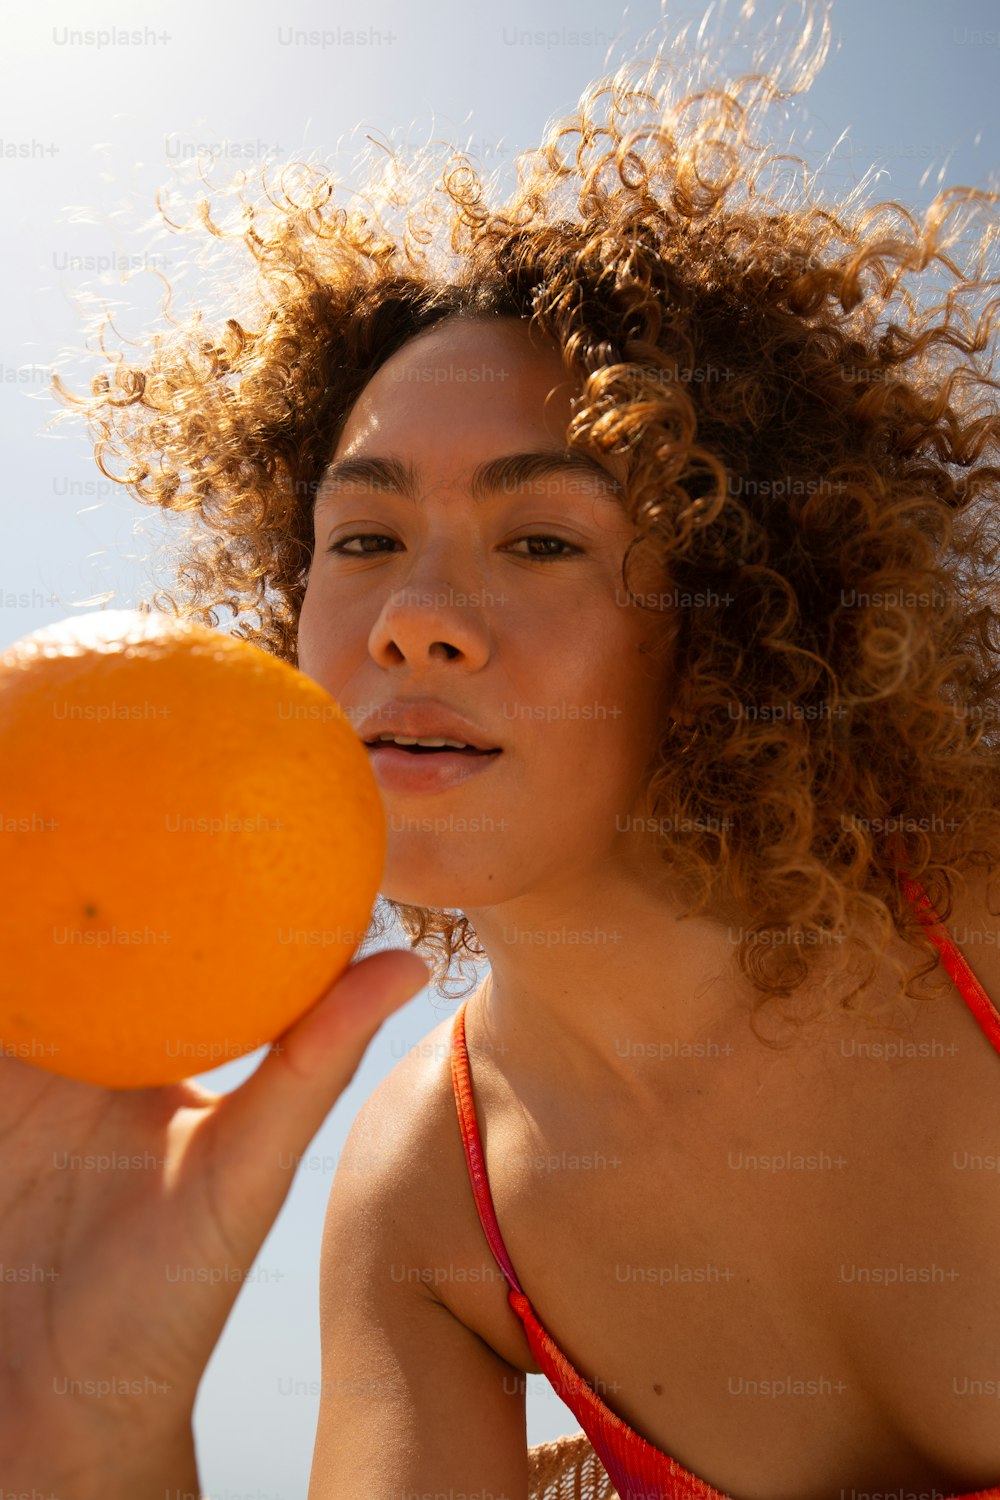 オレンジを持つビキニの女性